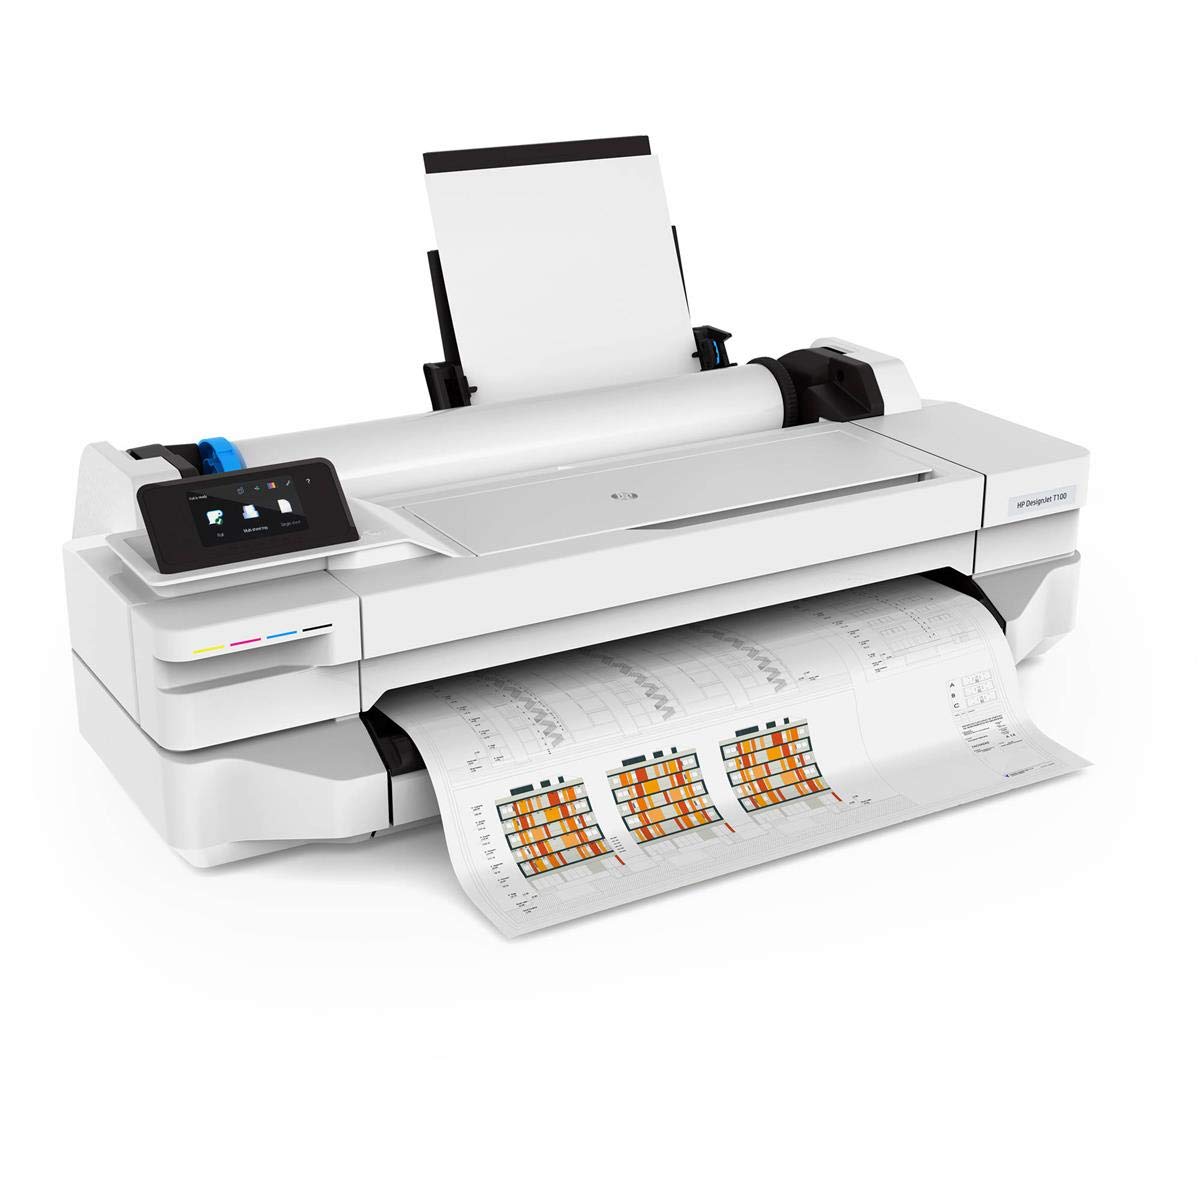 DesignJet T500 Printer series